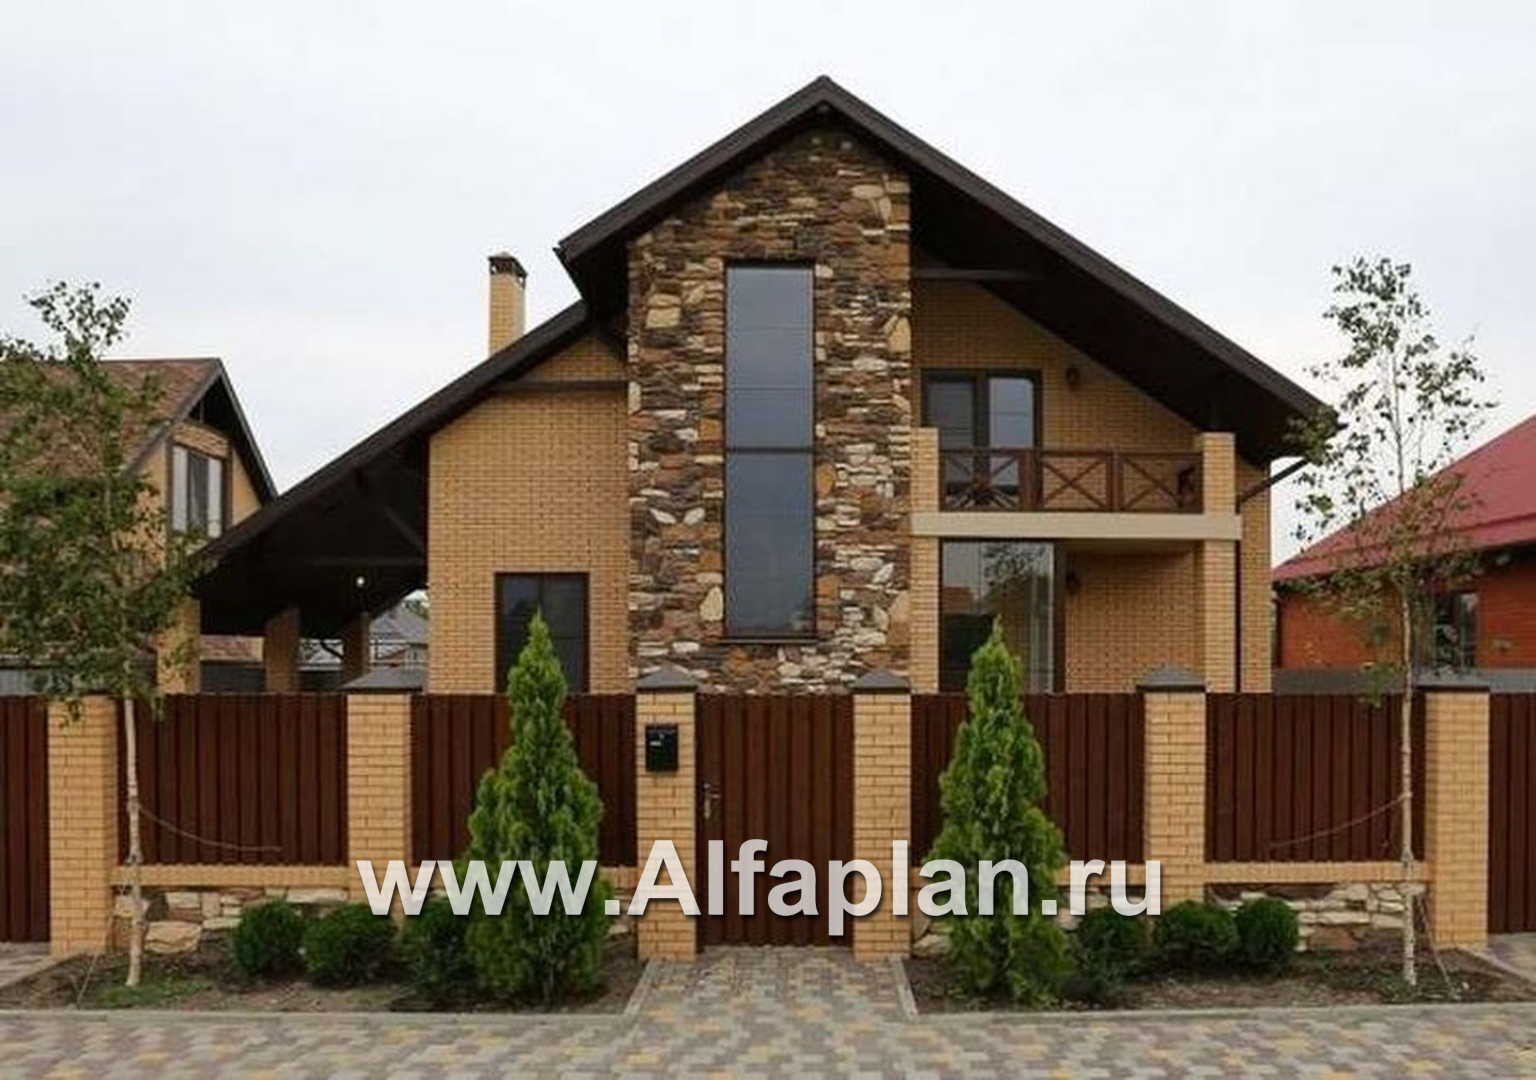 Проекты домов Альфаплан - «Зальцбург» - дом с рациональной планировкой - дополнительное изображение №2